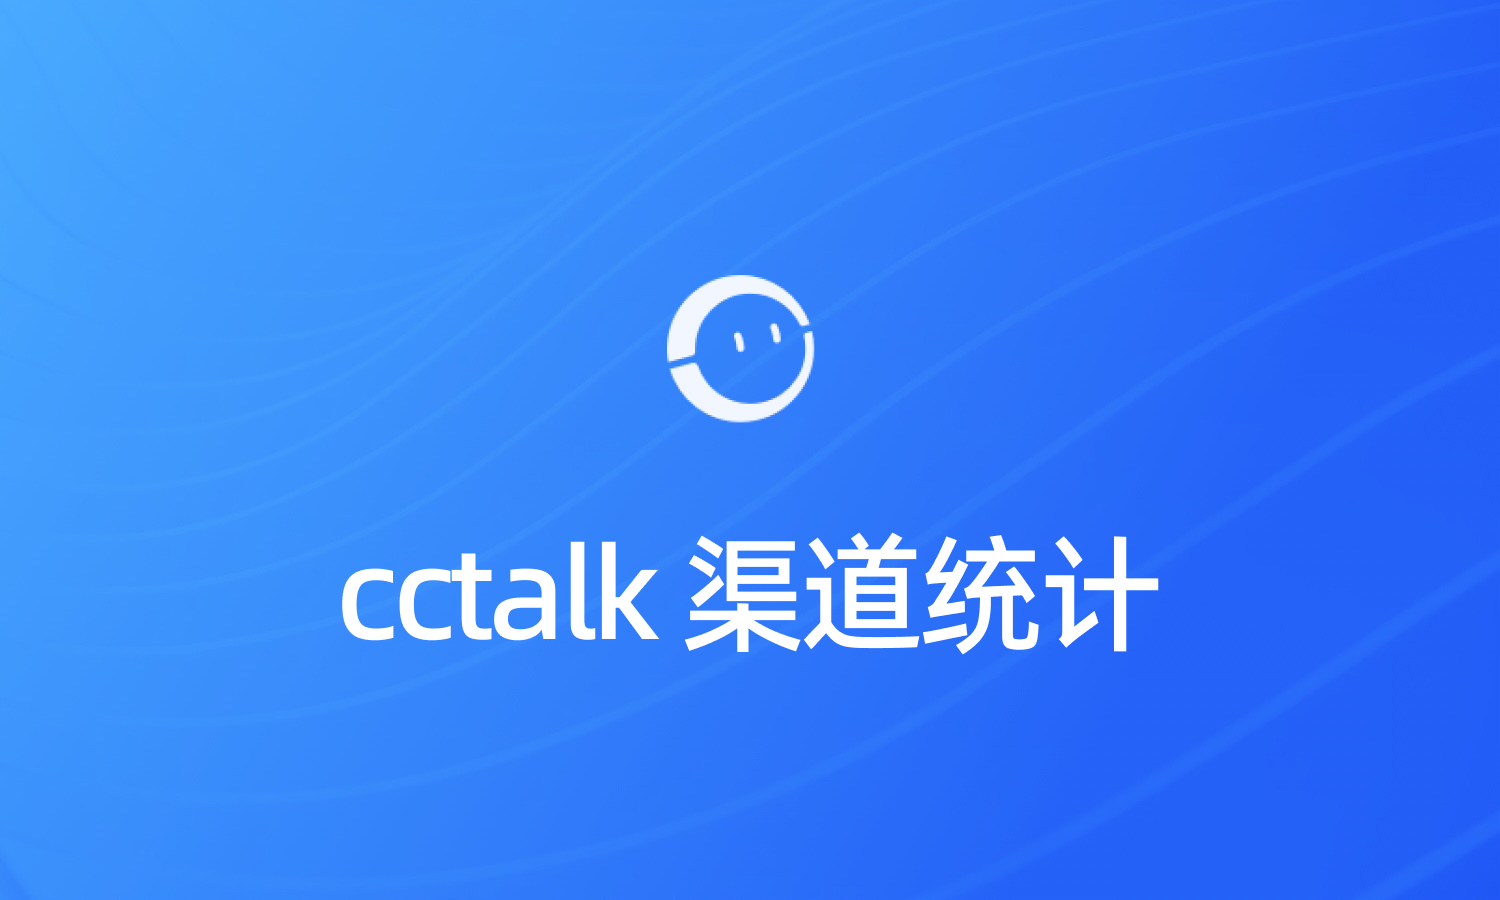 cctalk课程分渠道统计访问量